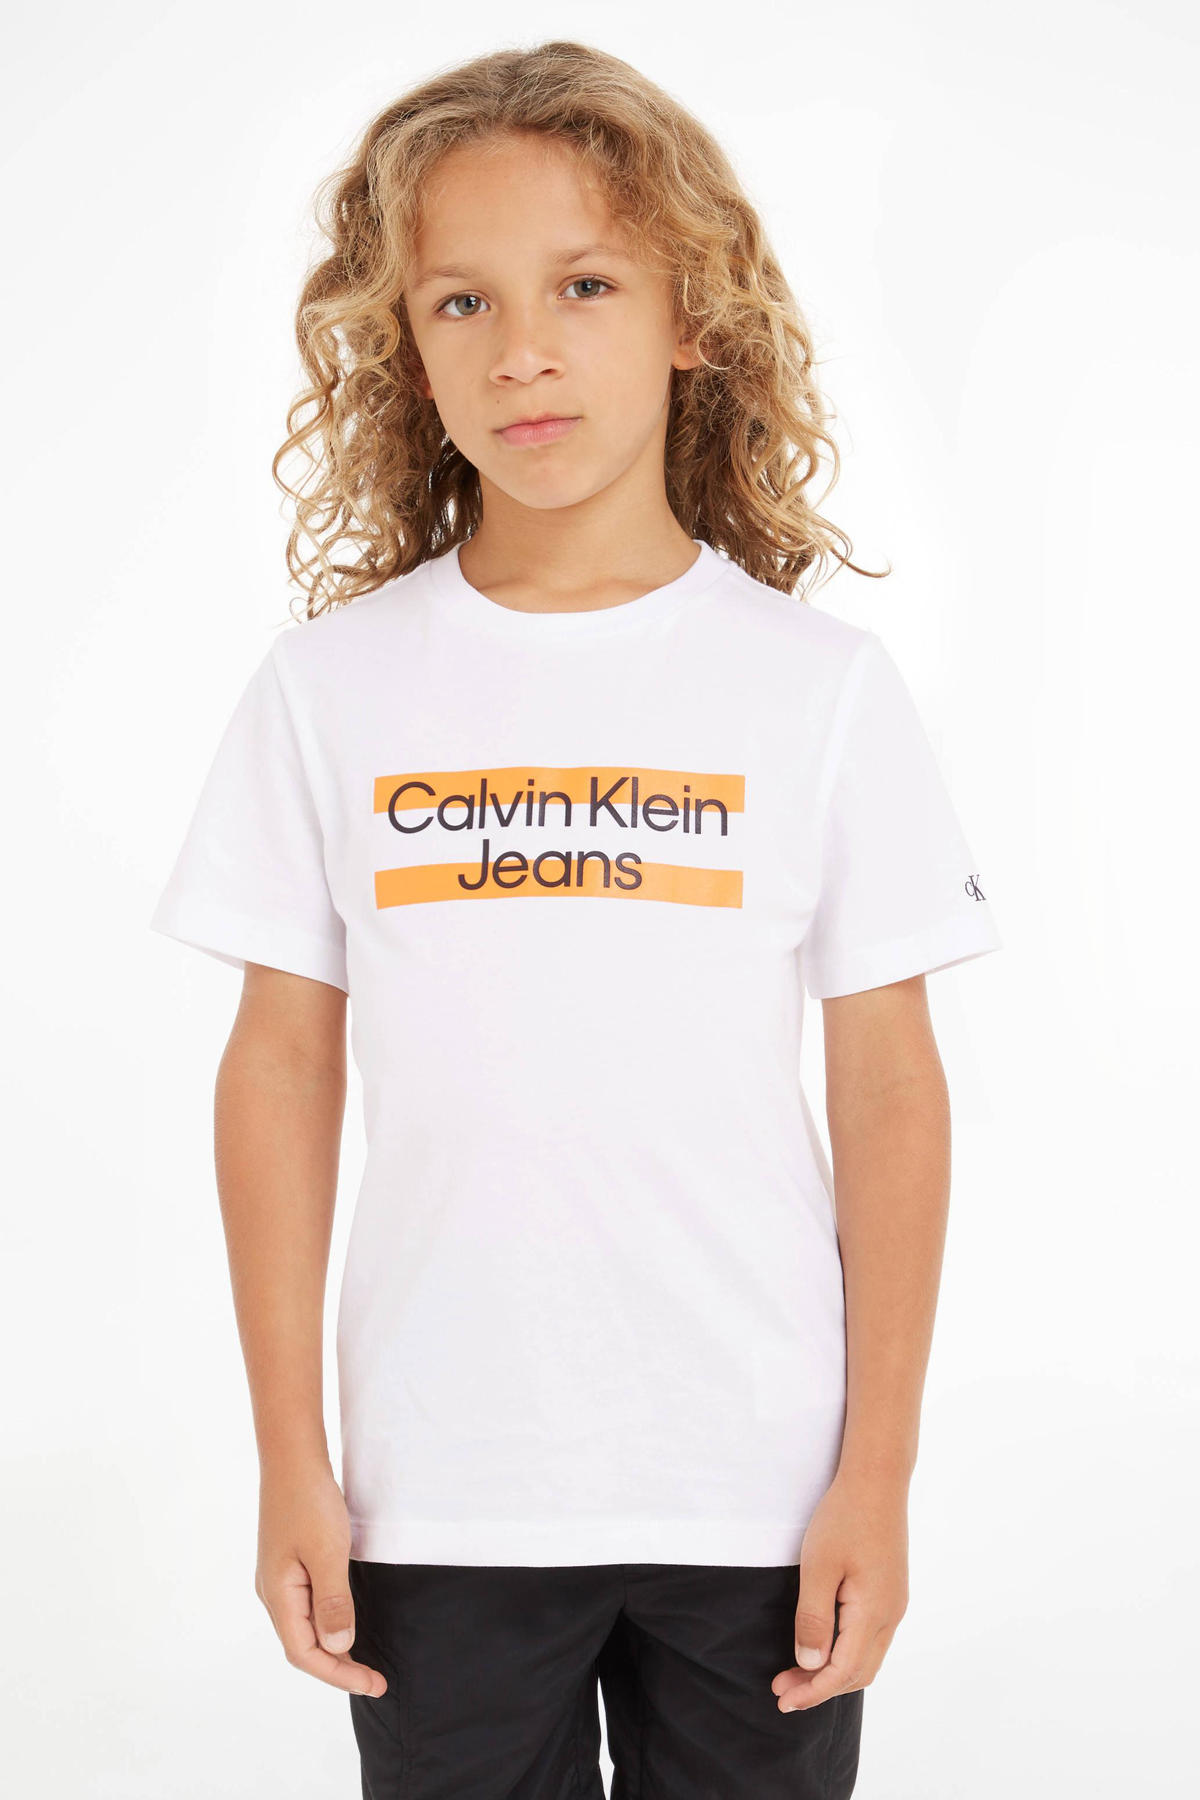 grootmoeder maniac morgen CALVIN KLEIN JEANS T-shirt met biologisch katoen wit | kleertjes.com